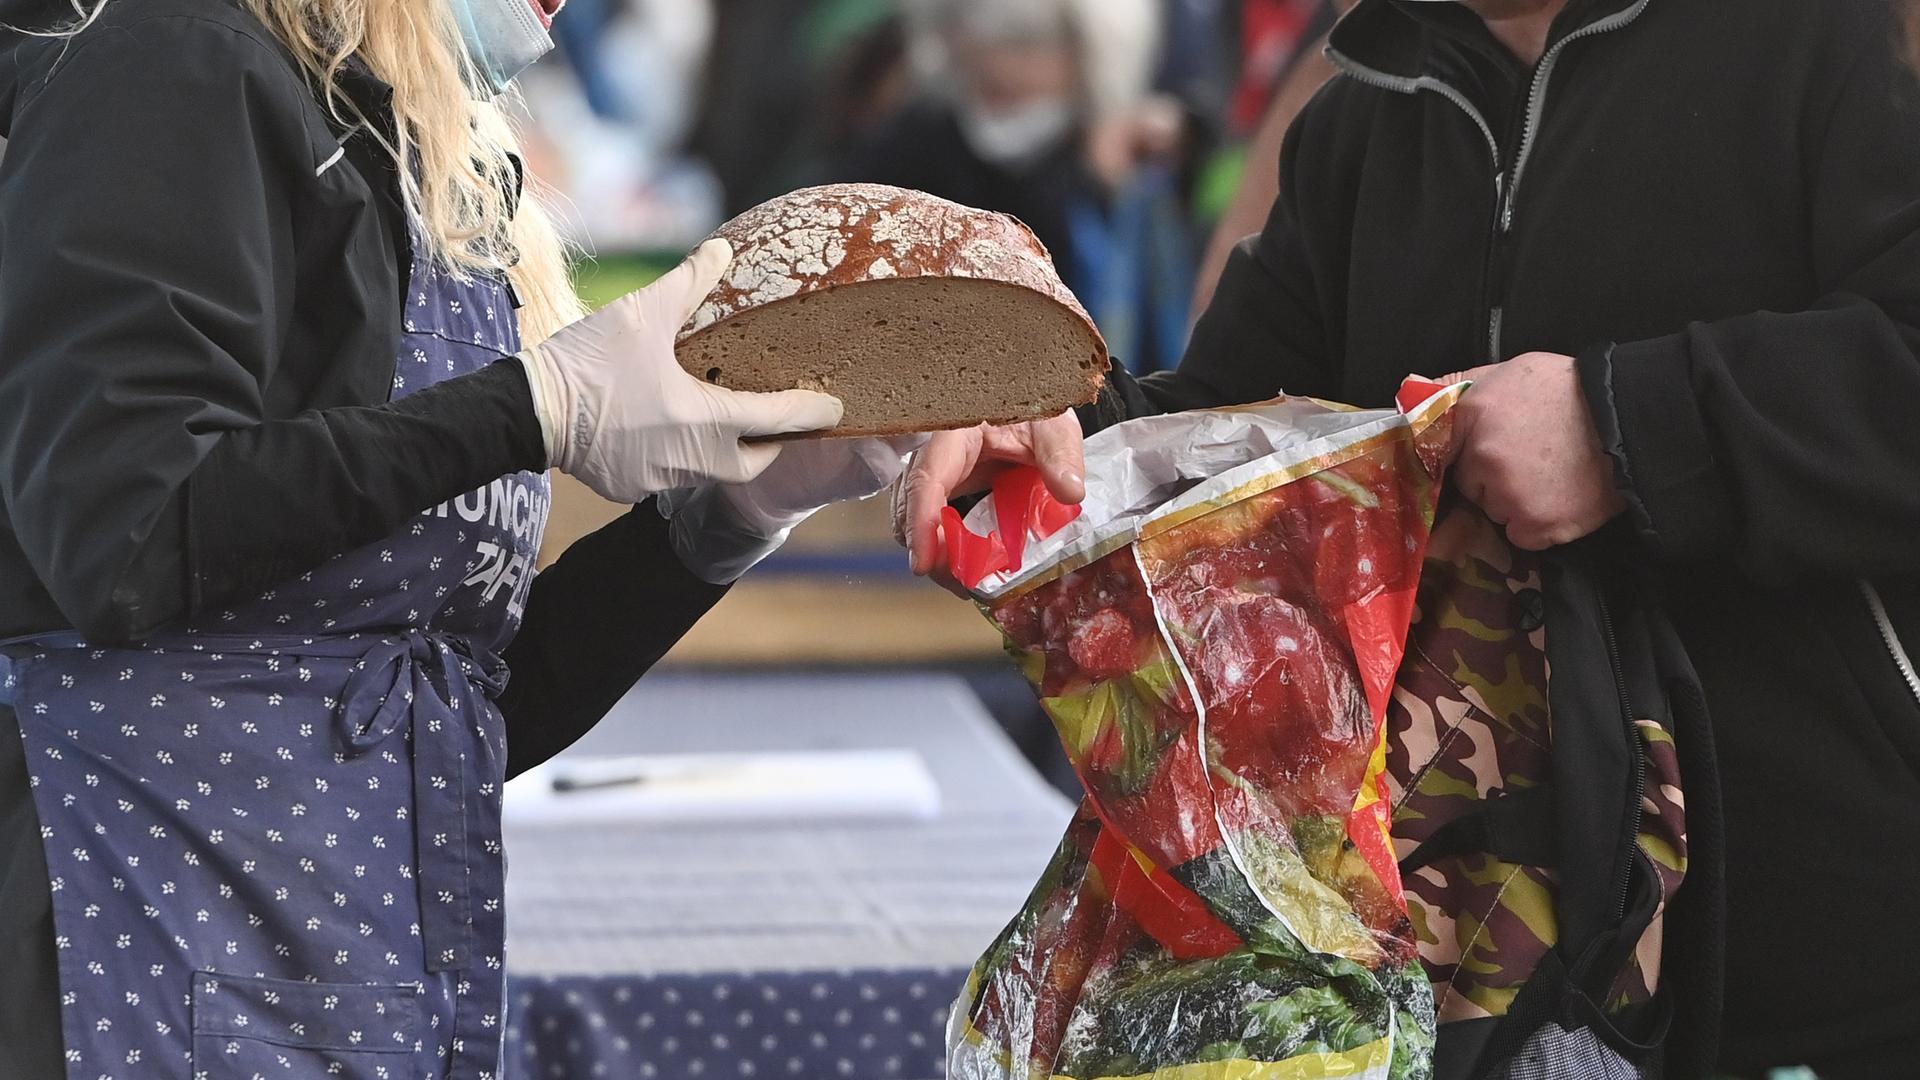 Bedürftige Menschen bei einer Tafel bei der Ausgabe von Lebensmitteln, ein Brot wird in eine Plastiktüte gesteckt.